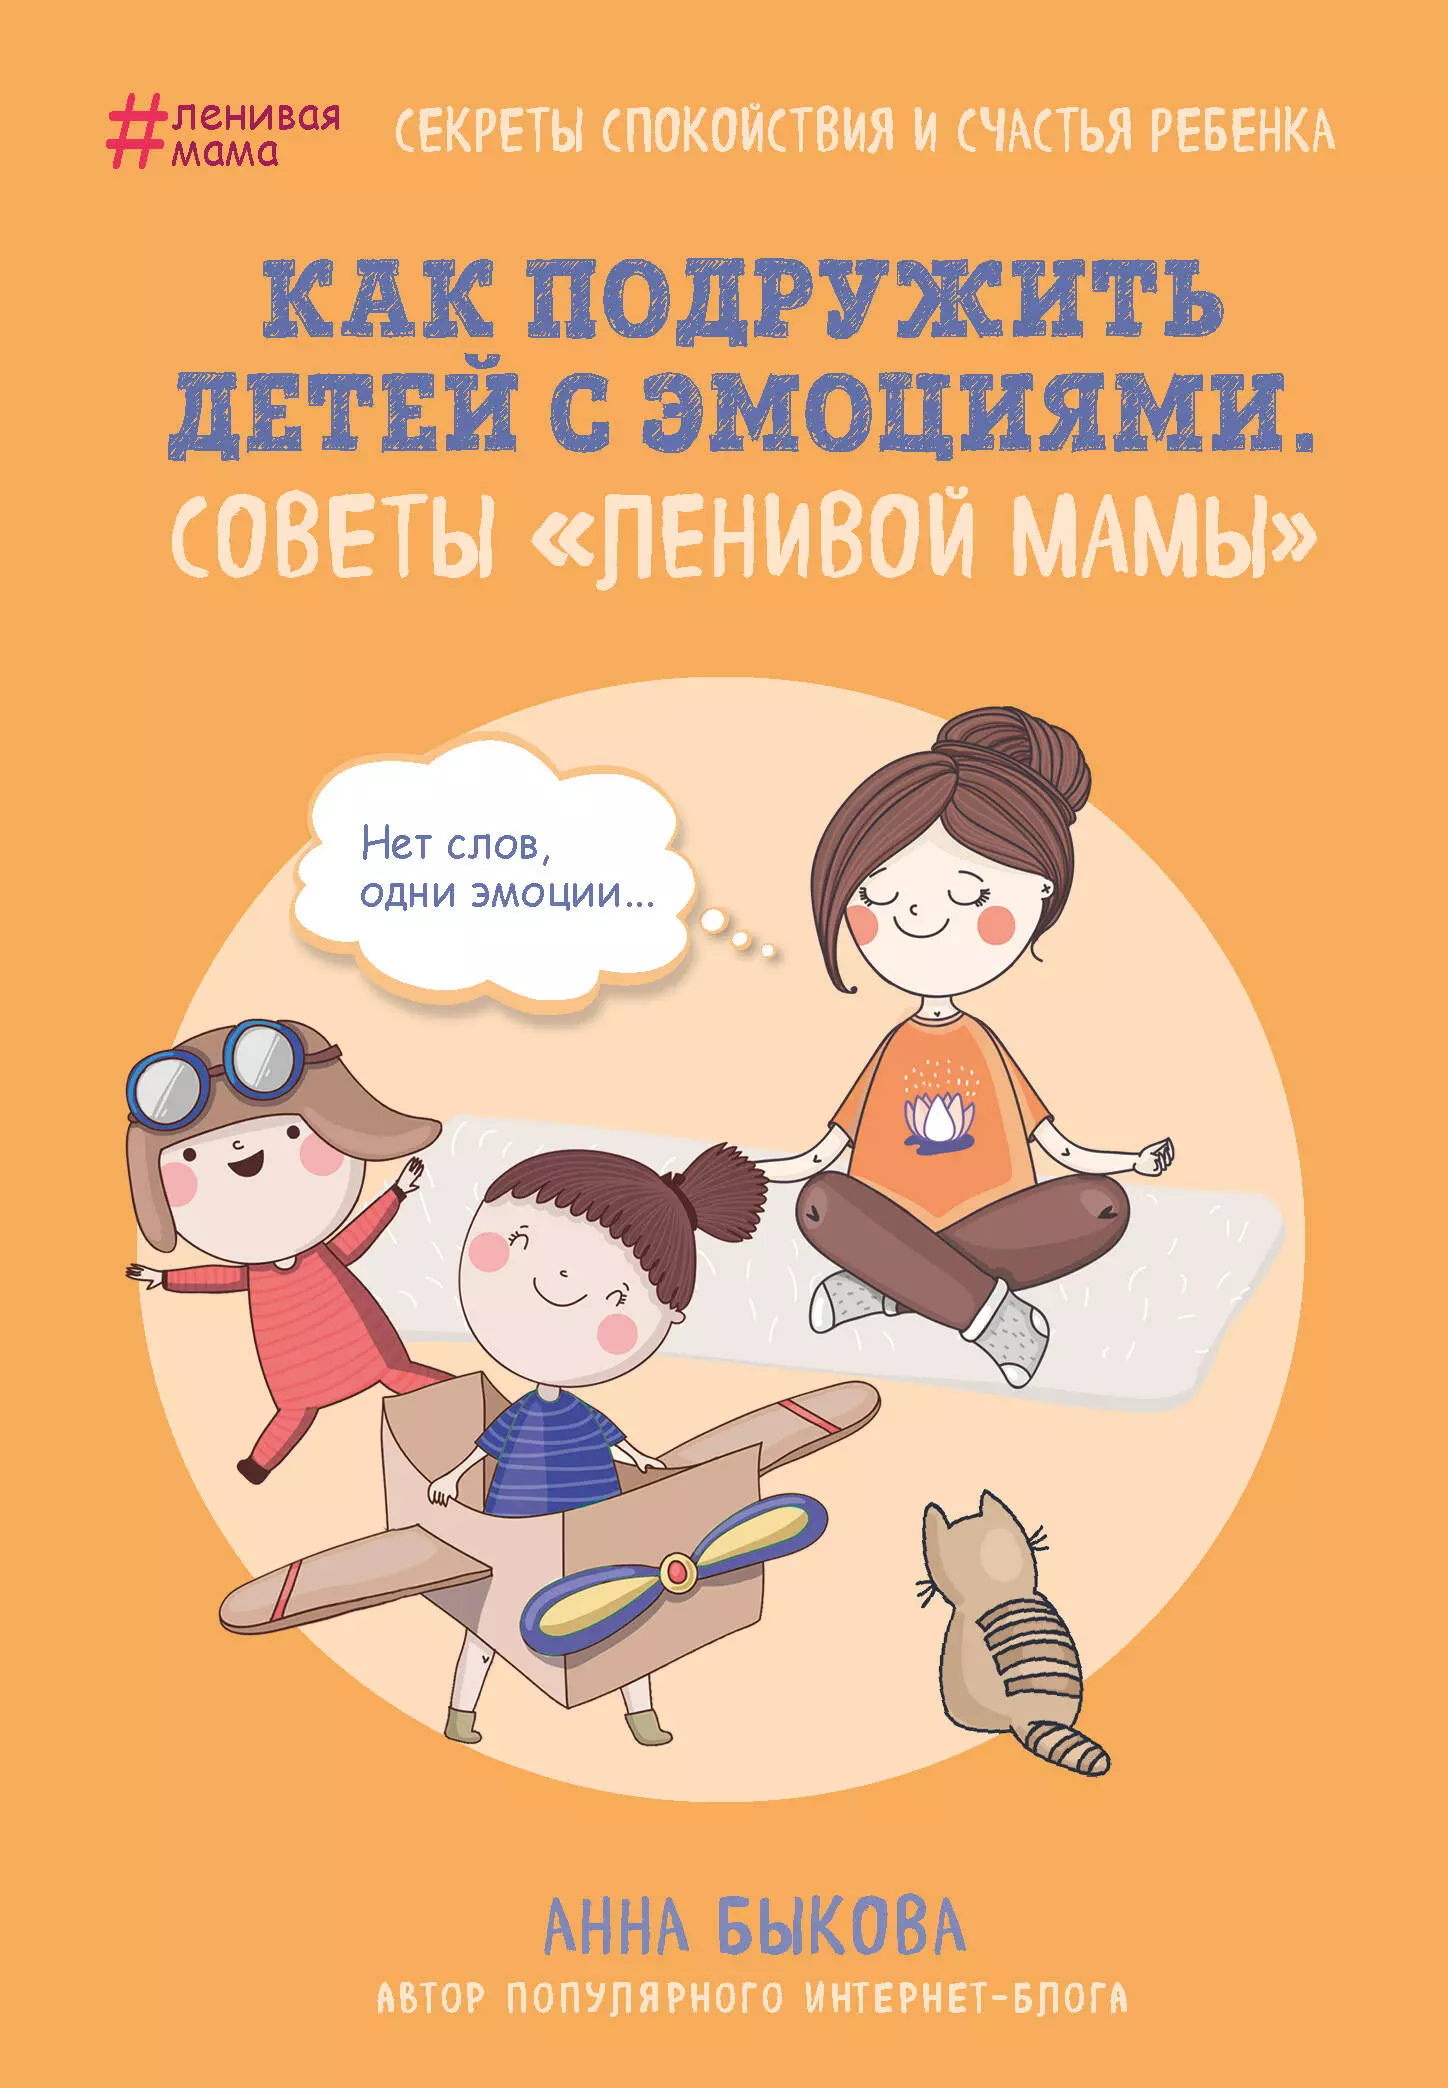 Быкова Анна Александровна - Как подружить детей с эмоциями. Советы "ленивой мамы"